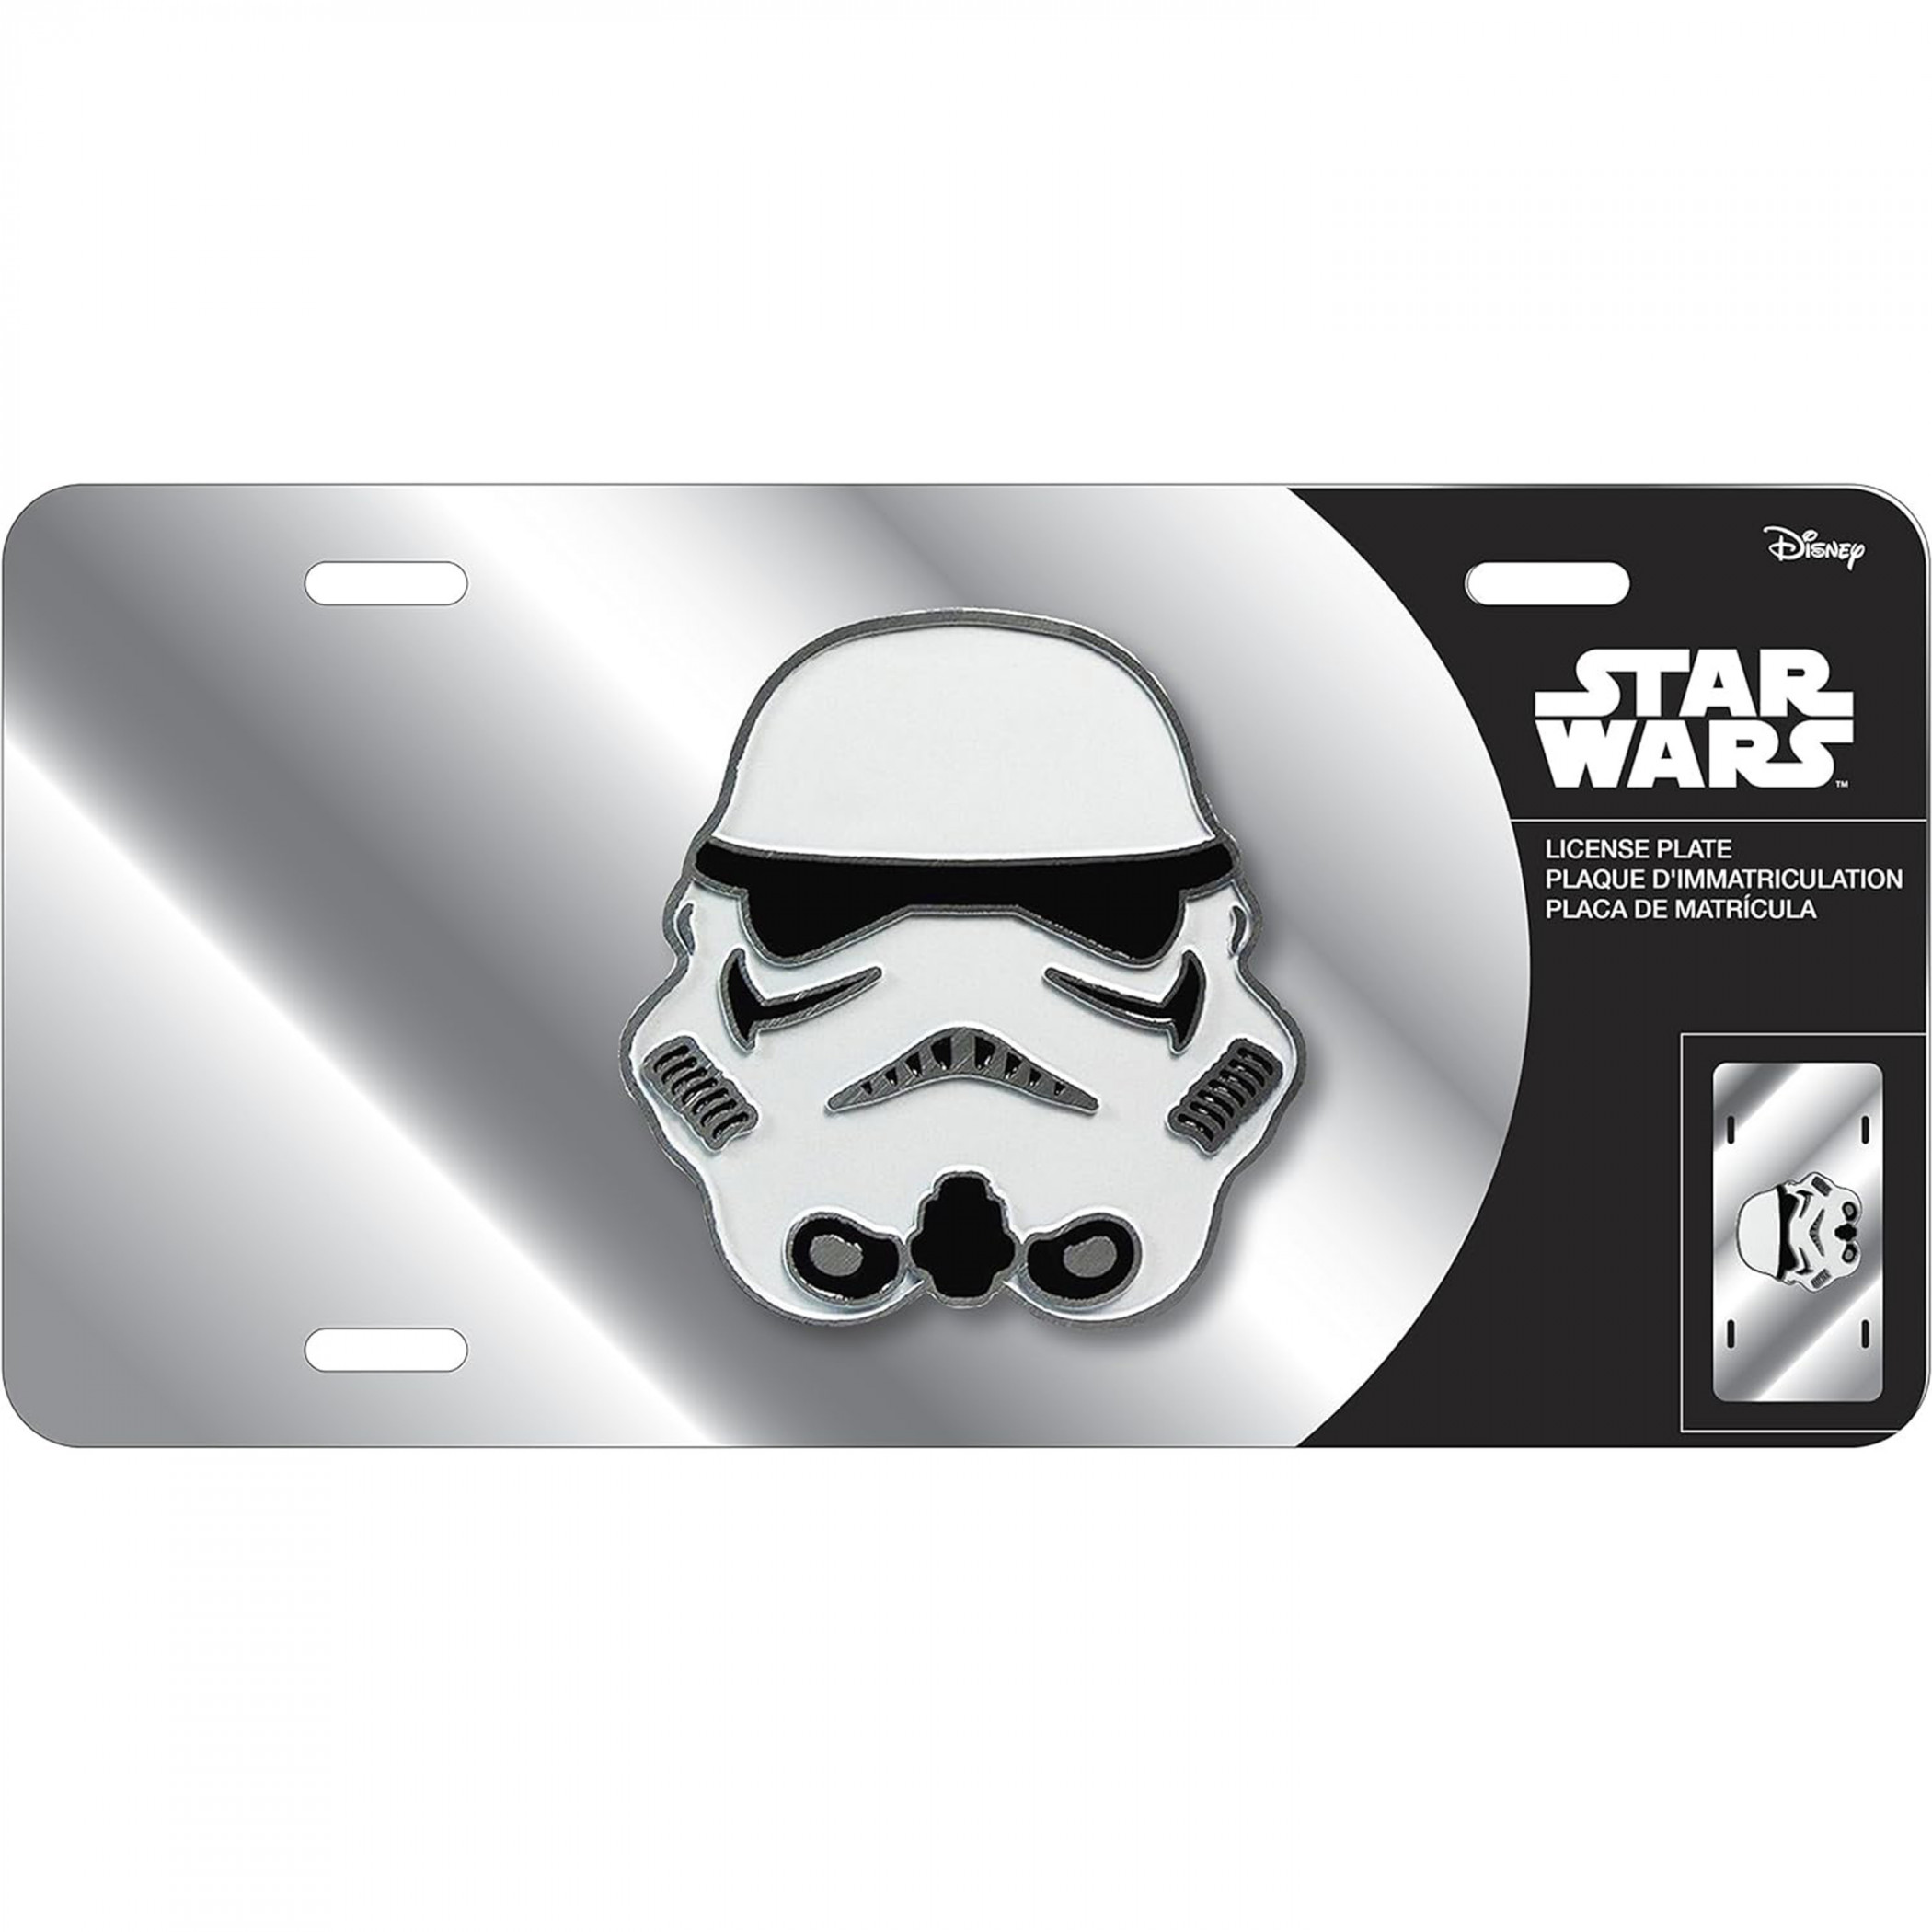 Star Wars Stormtrooper Licenses Plate Emblem